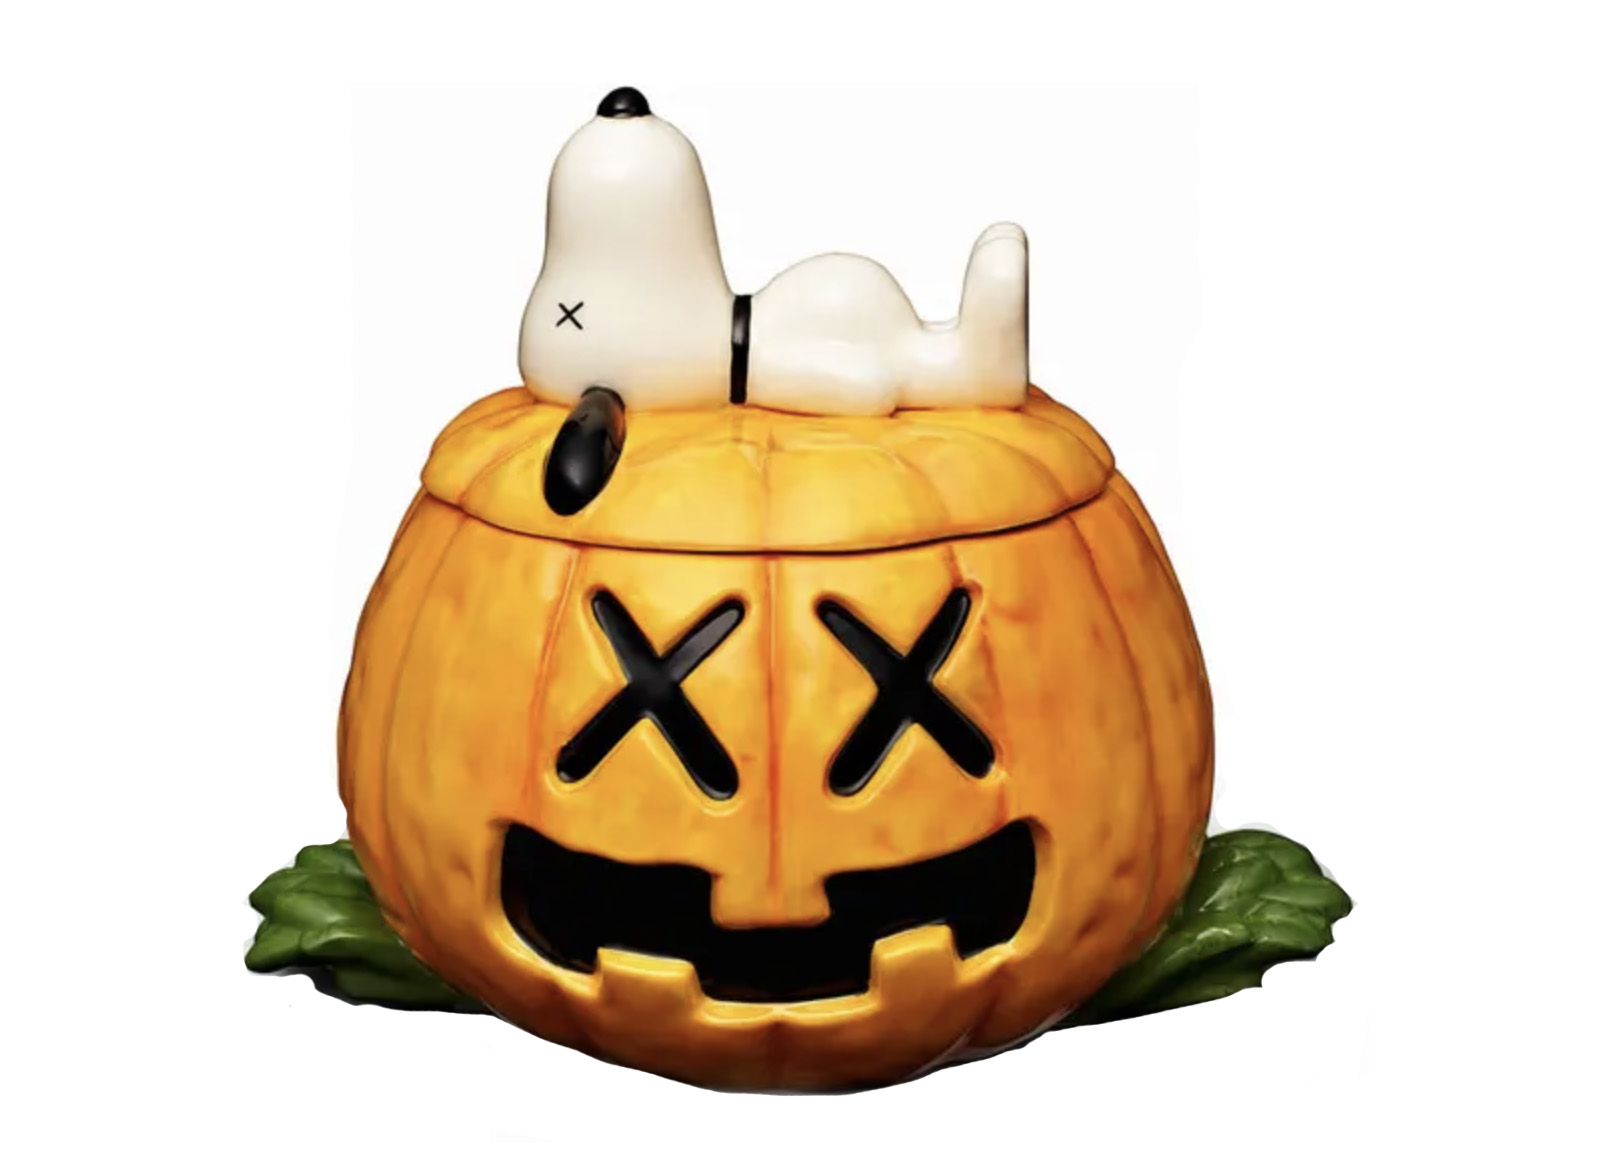 KAWS x Peanuts Snoopy Halloween Pumpkin Ceramic Jar Orange 